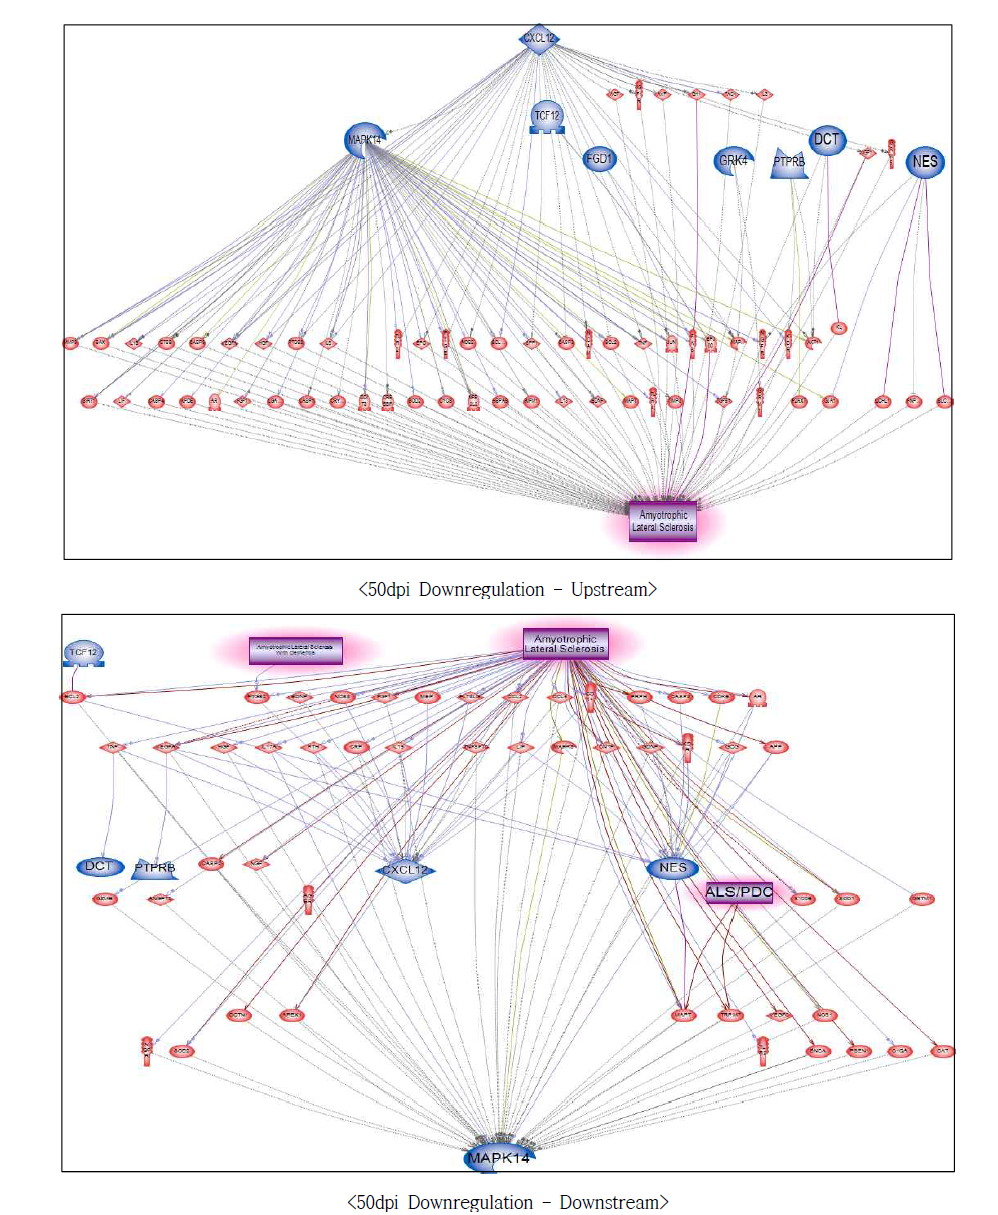 50dpi 저발현 유전자에서의 루게릭병에 대한 네트워크 구축